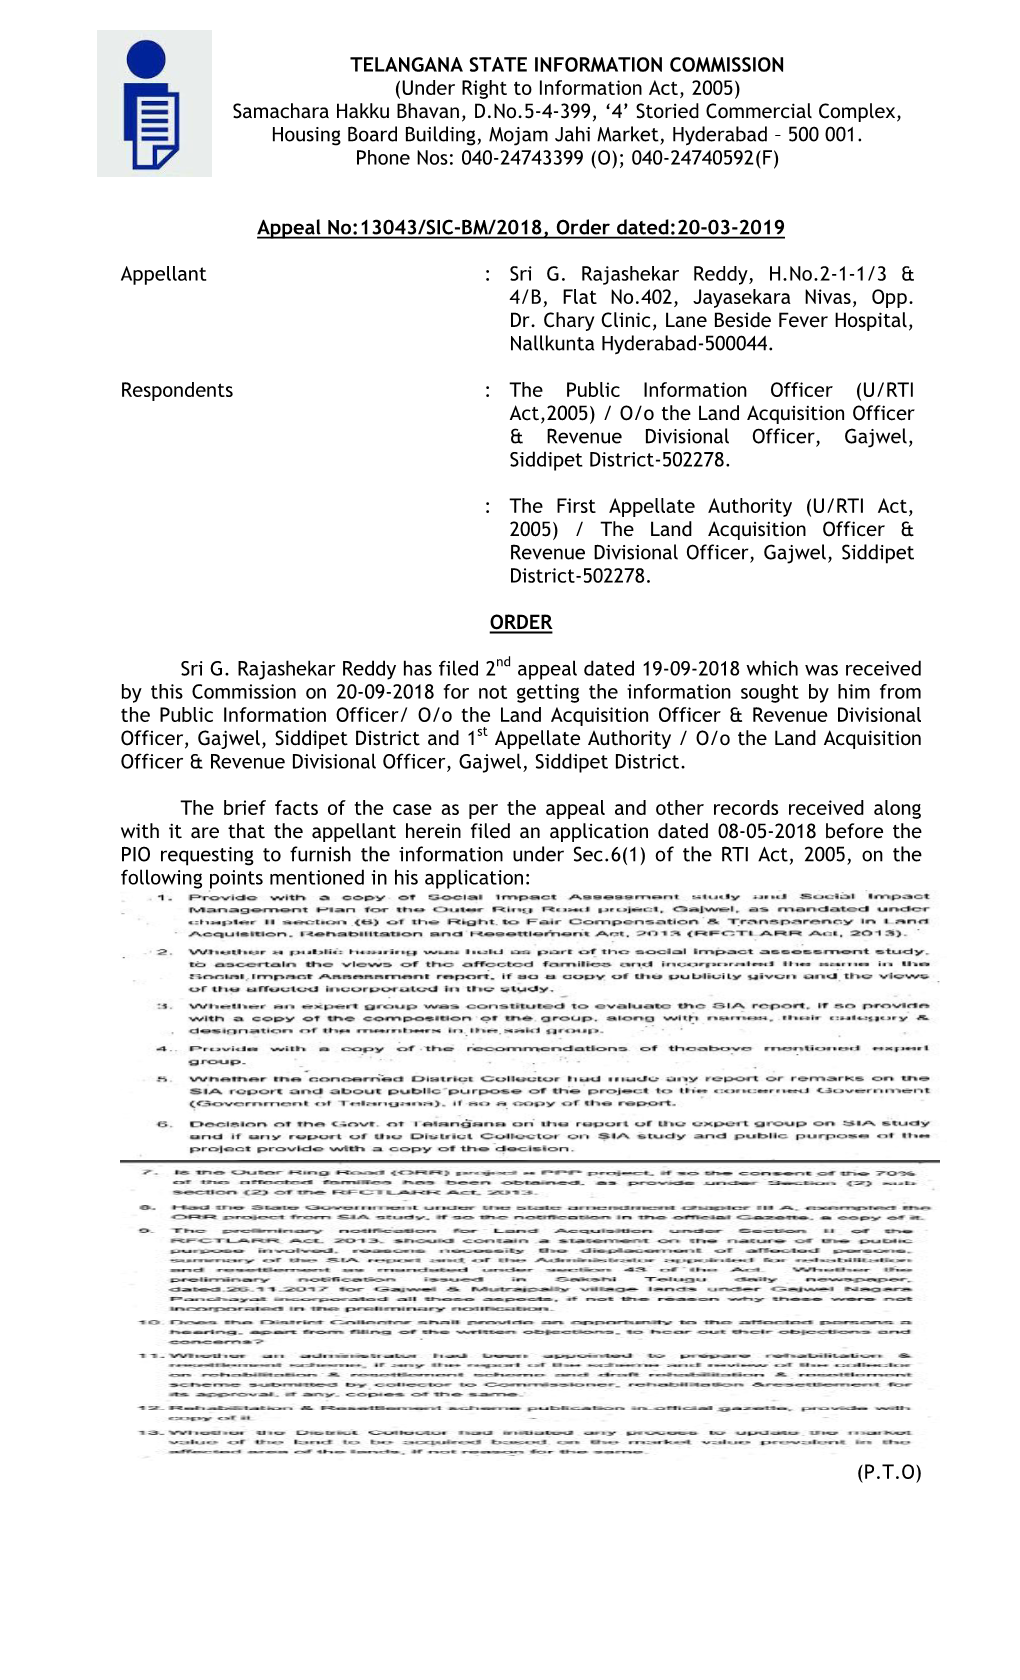 (Under Right to Information Act, 2005) Samachara Hakku Bhavan, D.No.5